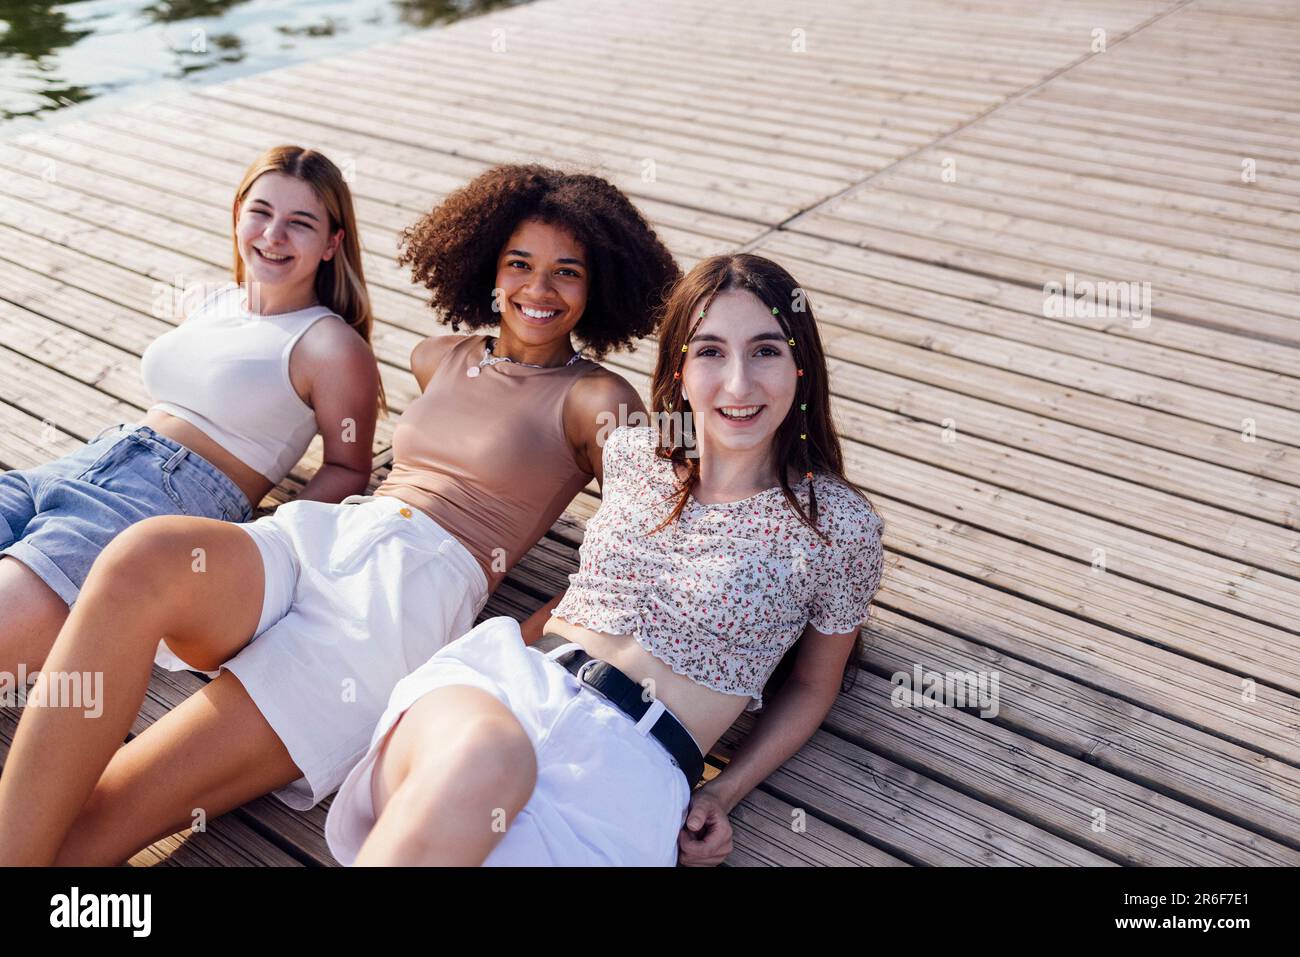 Les adolescentes souriantes et multiraciales se trouvent sur un sol en bois à l'extérieur. Rire jolies filles de différentes nationalités dans les vêtements décontractés ont grand Banque D'Images